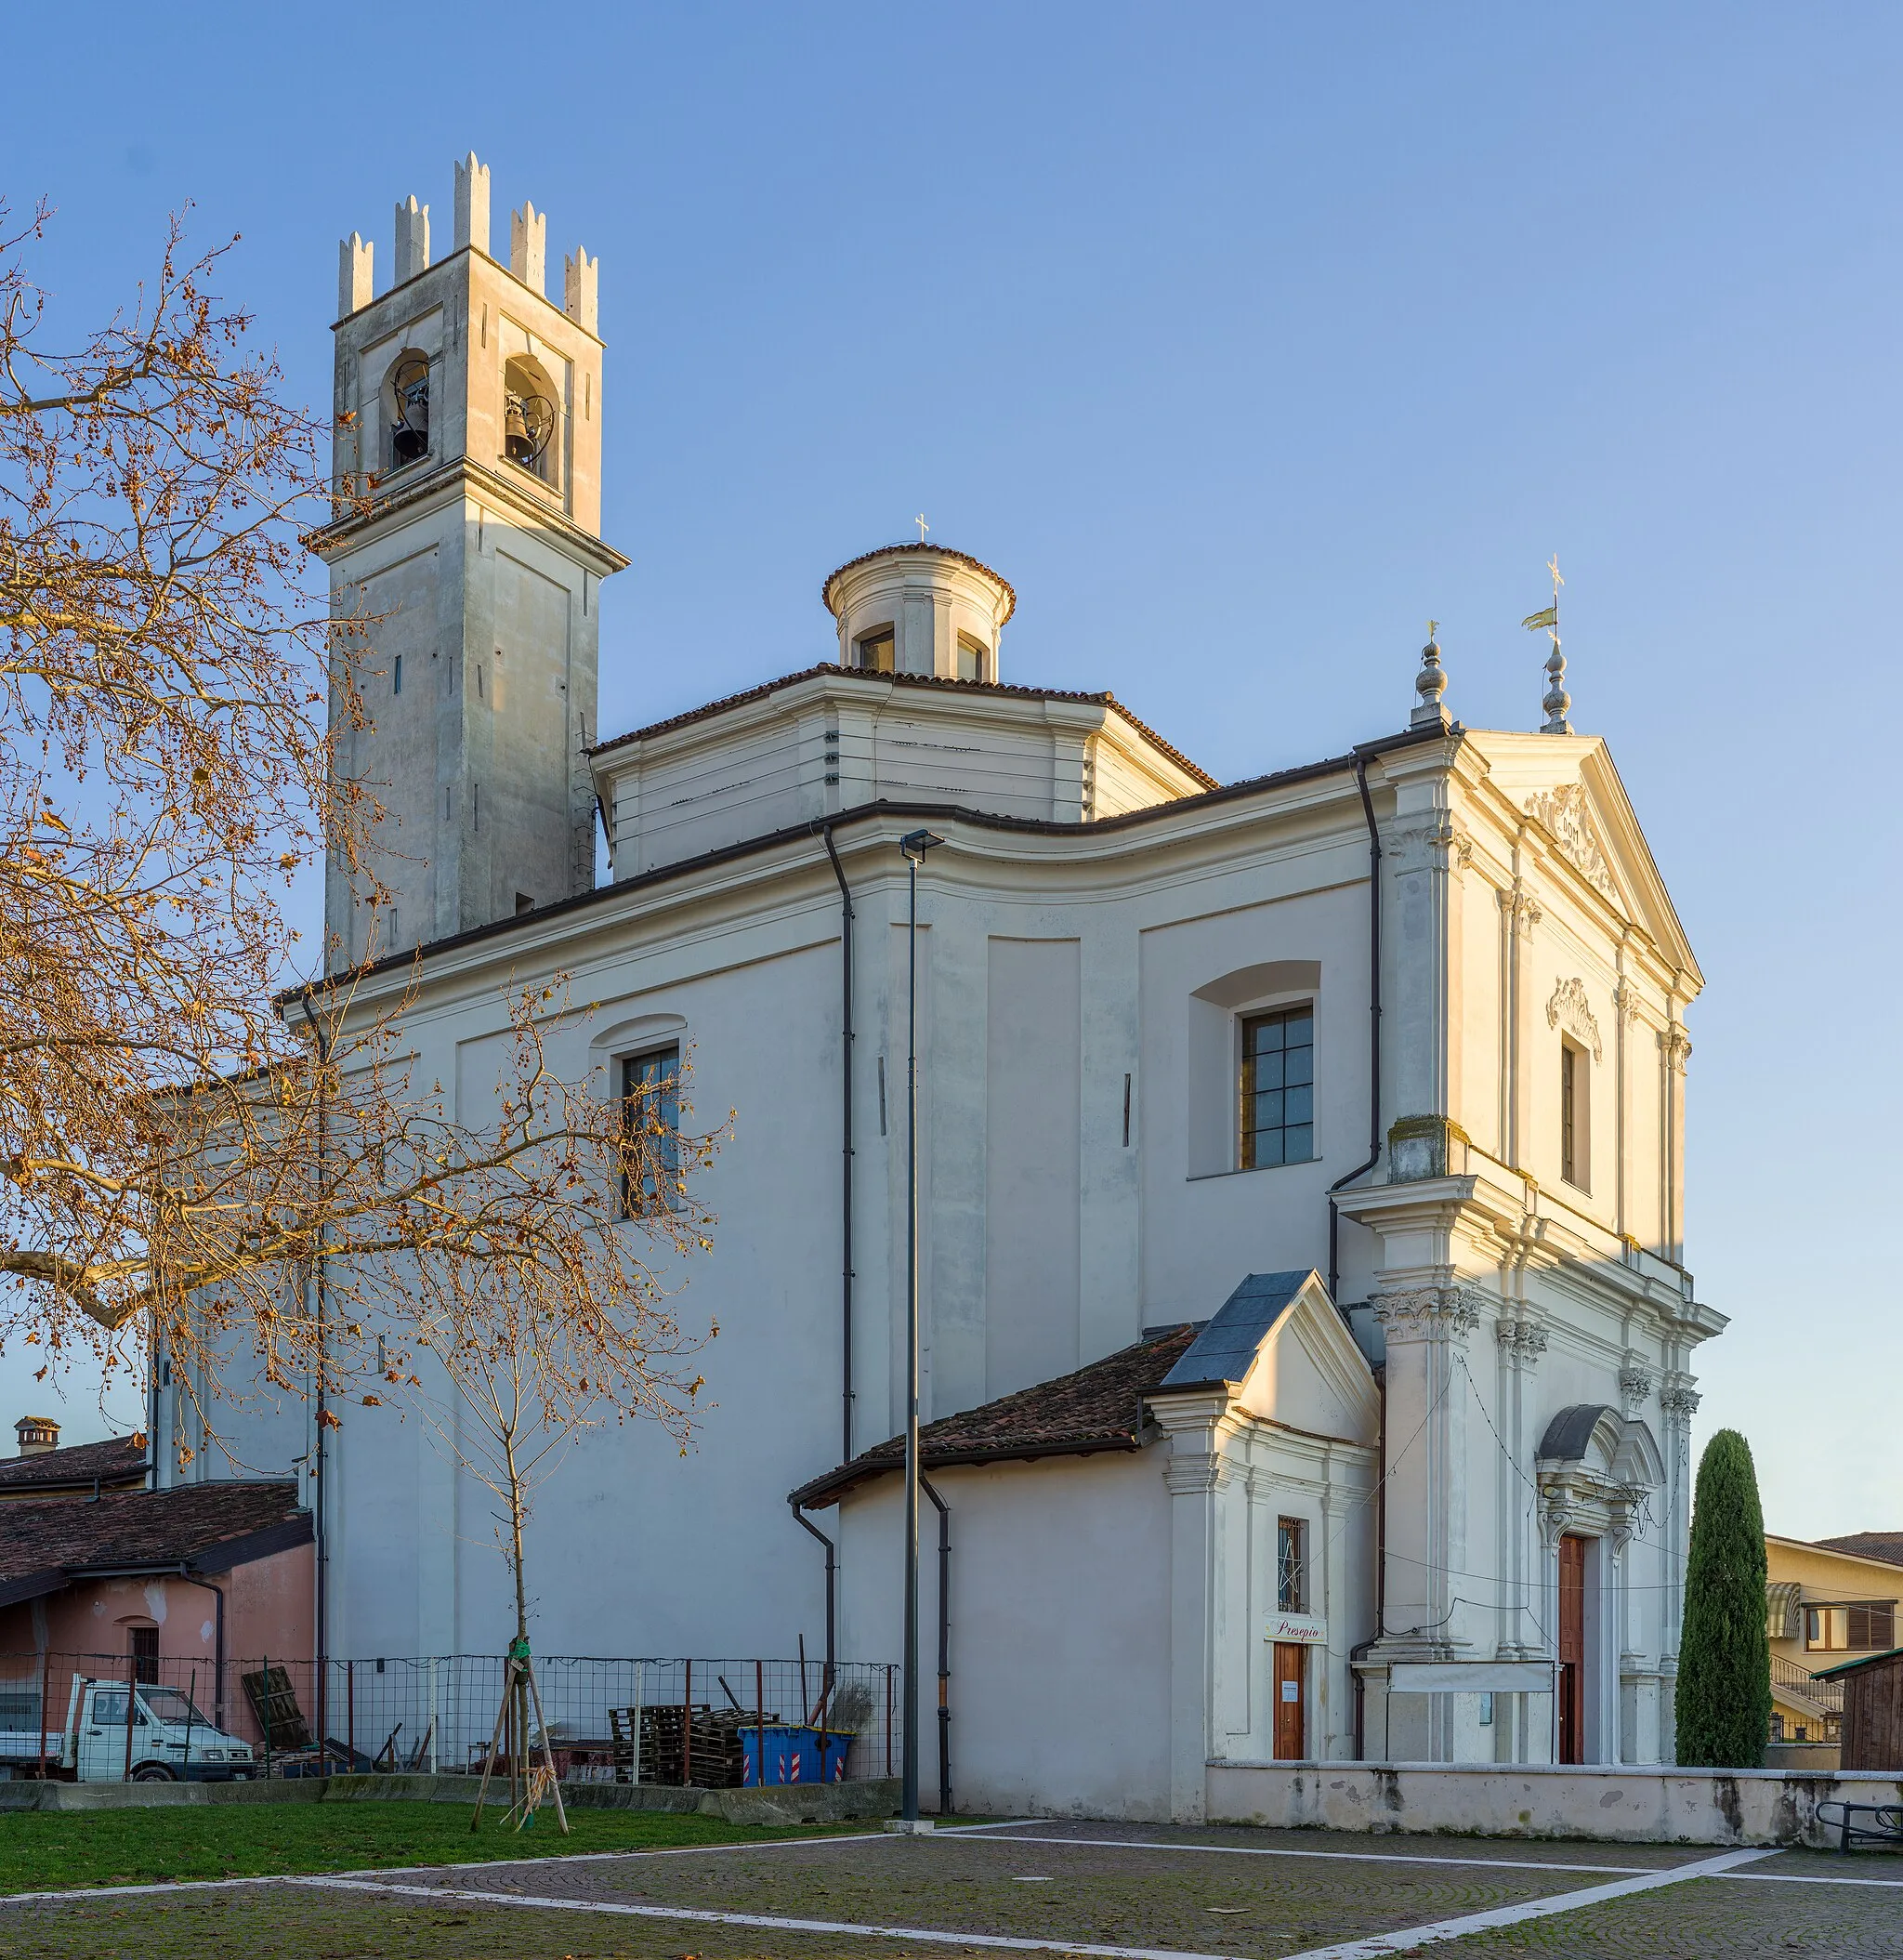 Photo showing: Facade of the Chiesa di San Silvestro church in Folzano, Brescia.